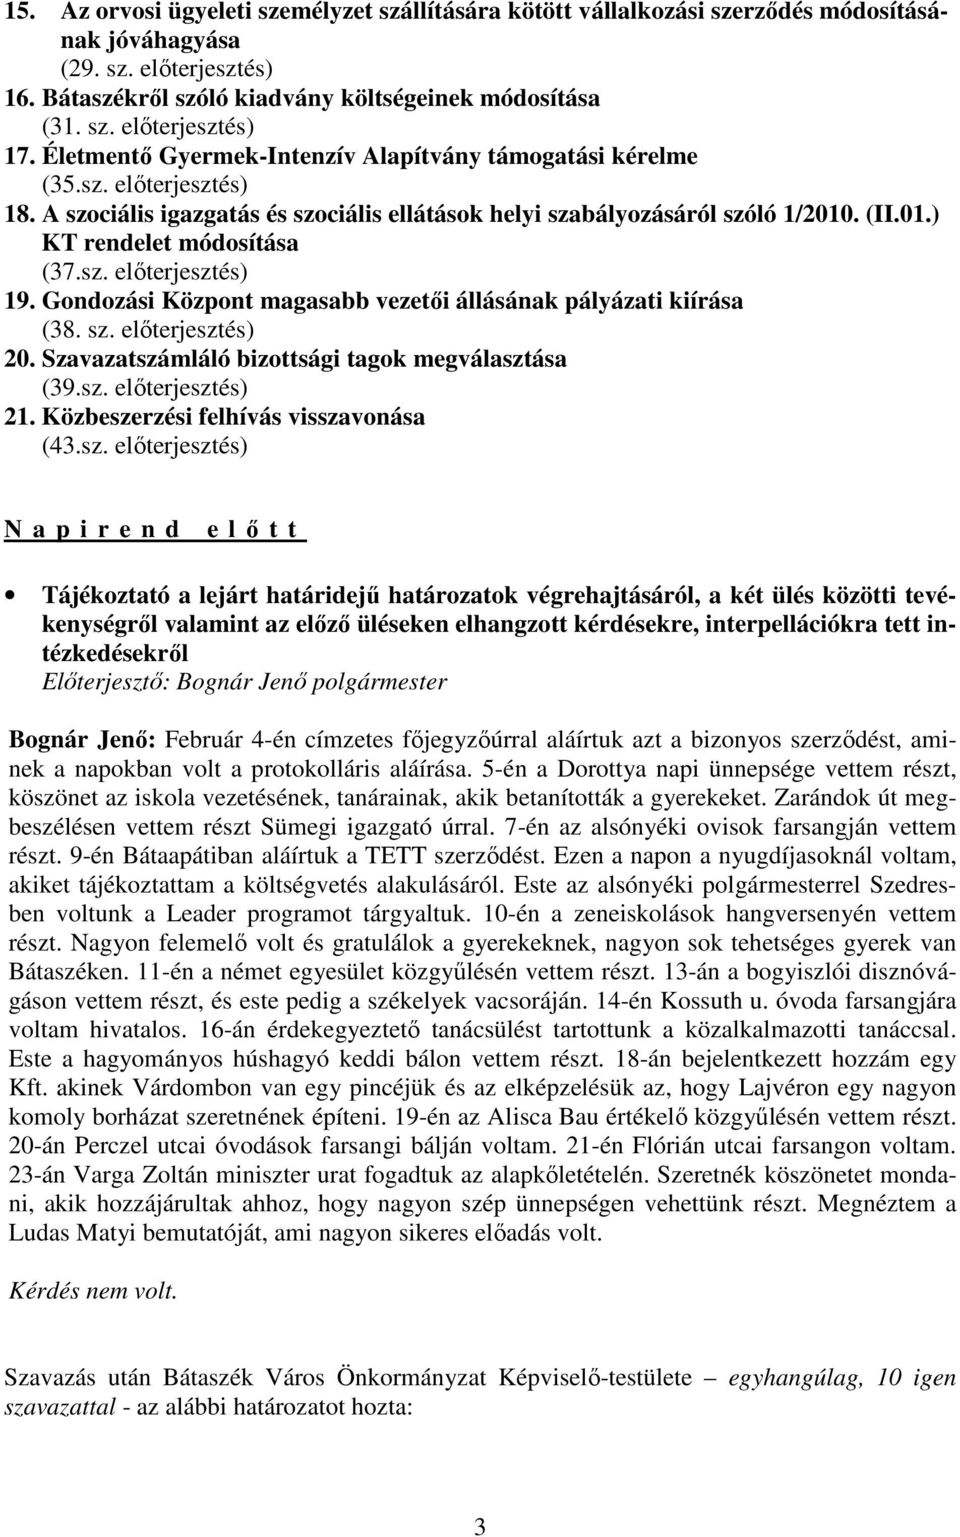 sz. elıterjesztés) 19. Gondozási Központ magasabb vezetıi állásának pályázati kiírása (38. sz. elıterjesztés) 20. Szavazatszámláló bizottsági tagok megválasztása (39.sz. elıterjesztés) 21.